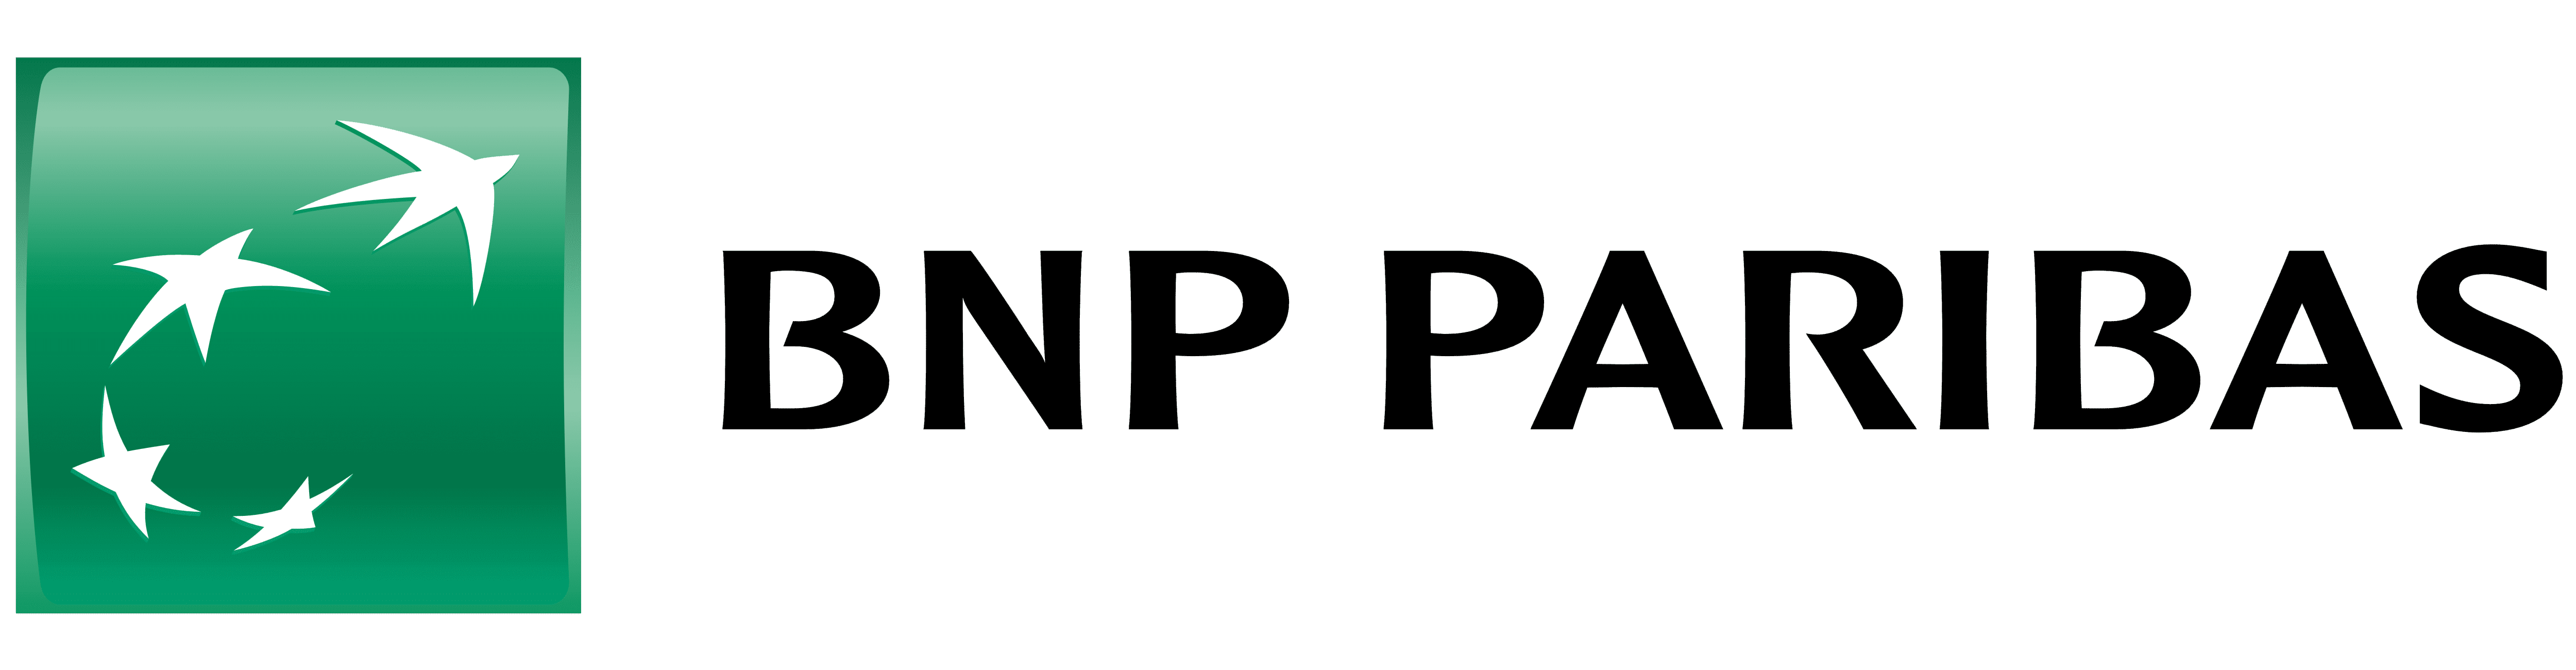 BNP Paribas — Profitez d’une expertise reconnue combinée à un vaste réseau d’agences